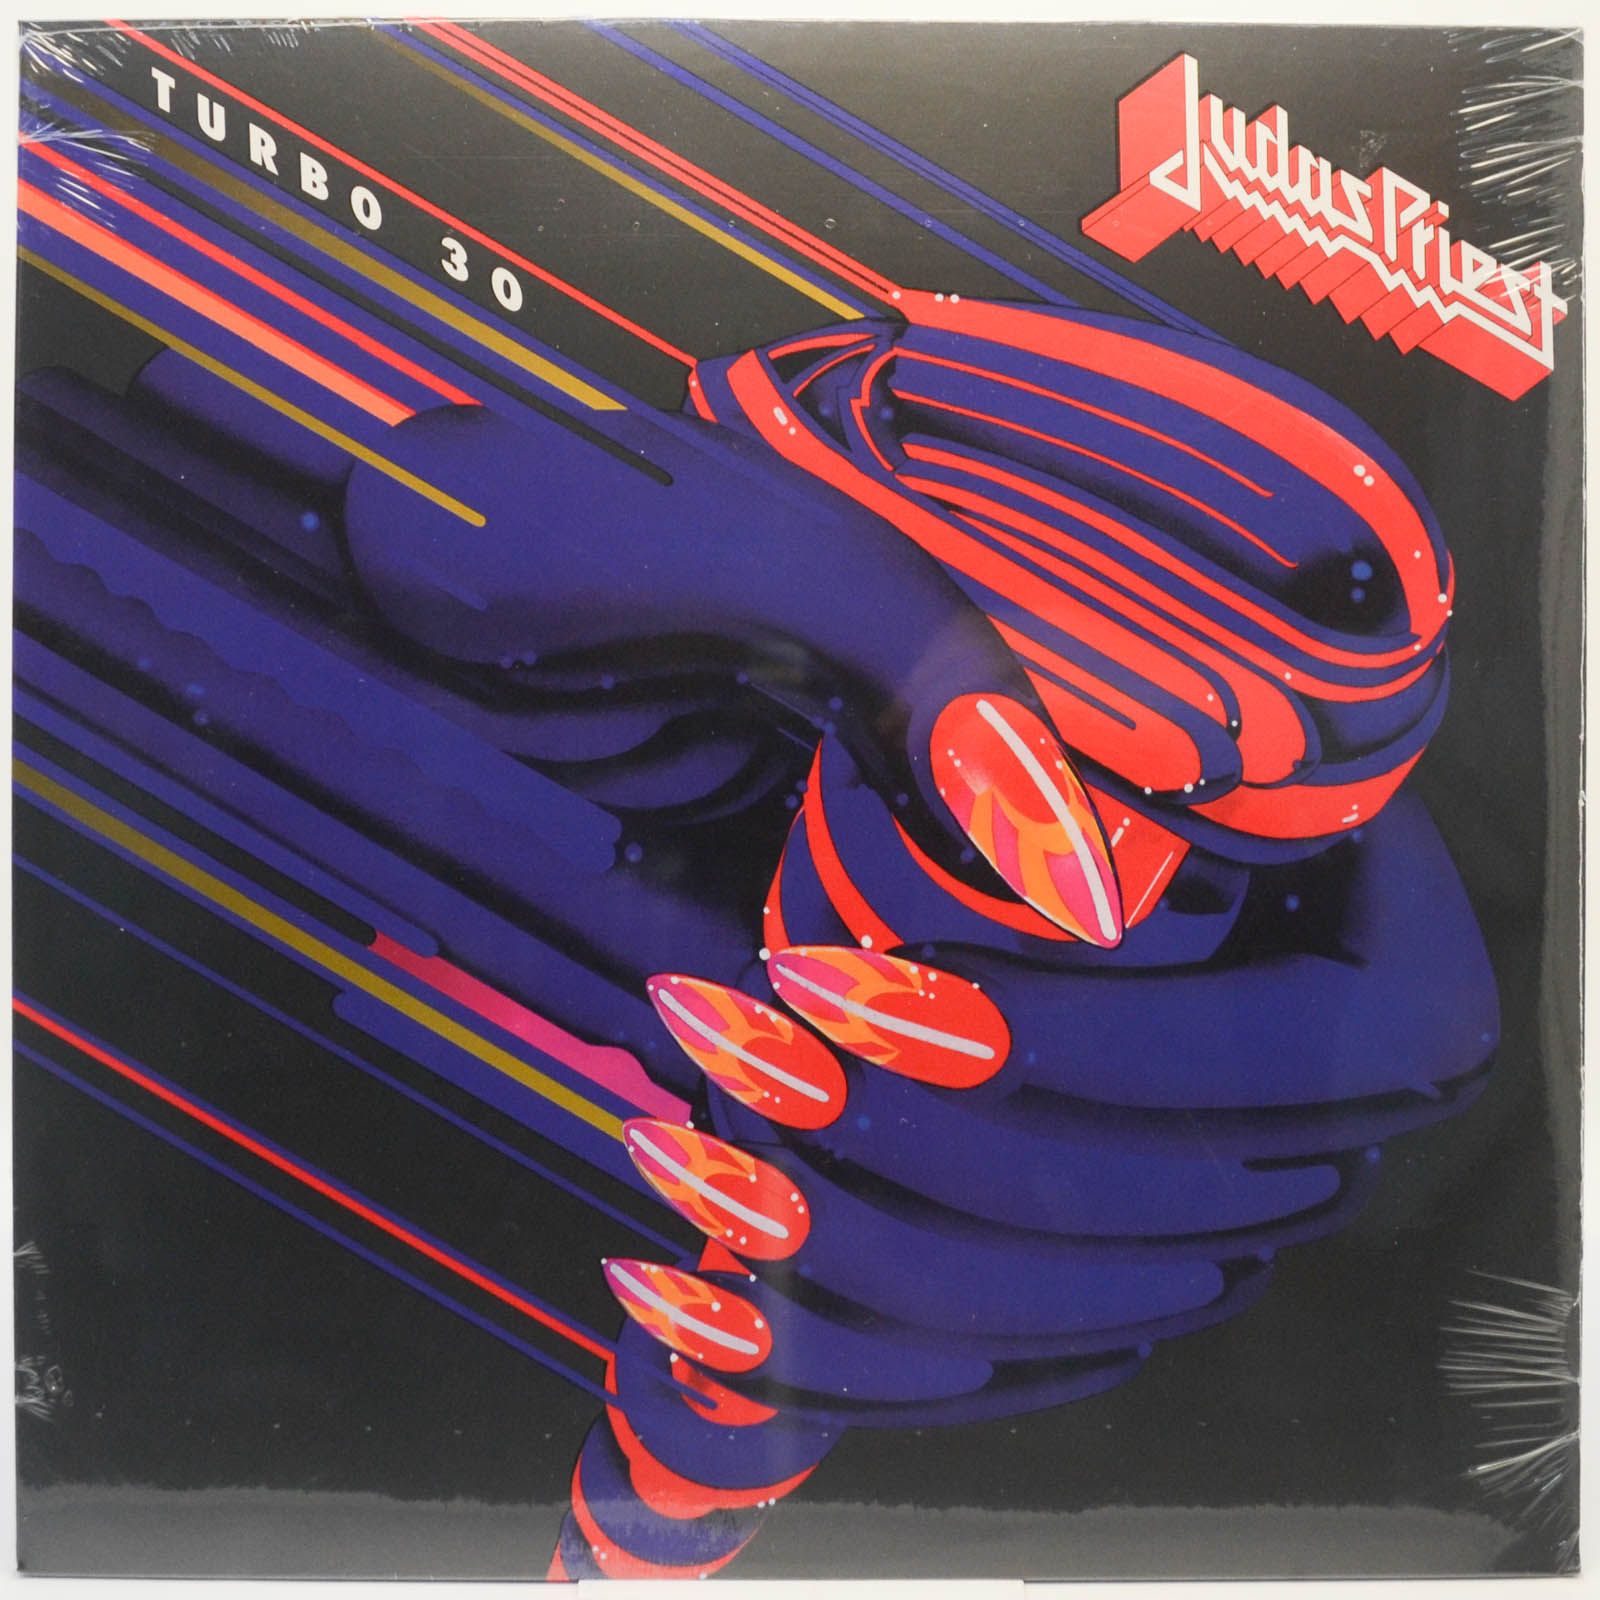 Judas Priest — Turbo 30, 1986